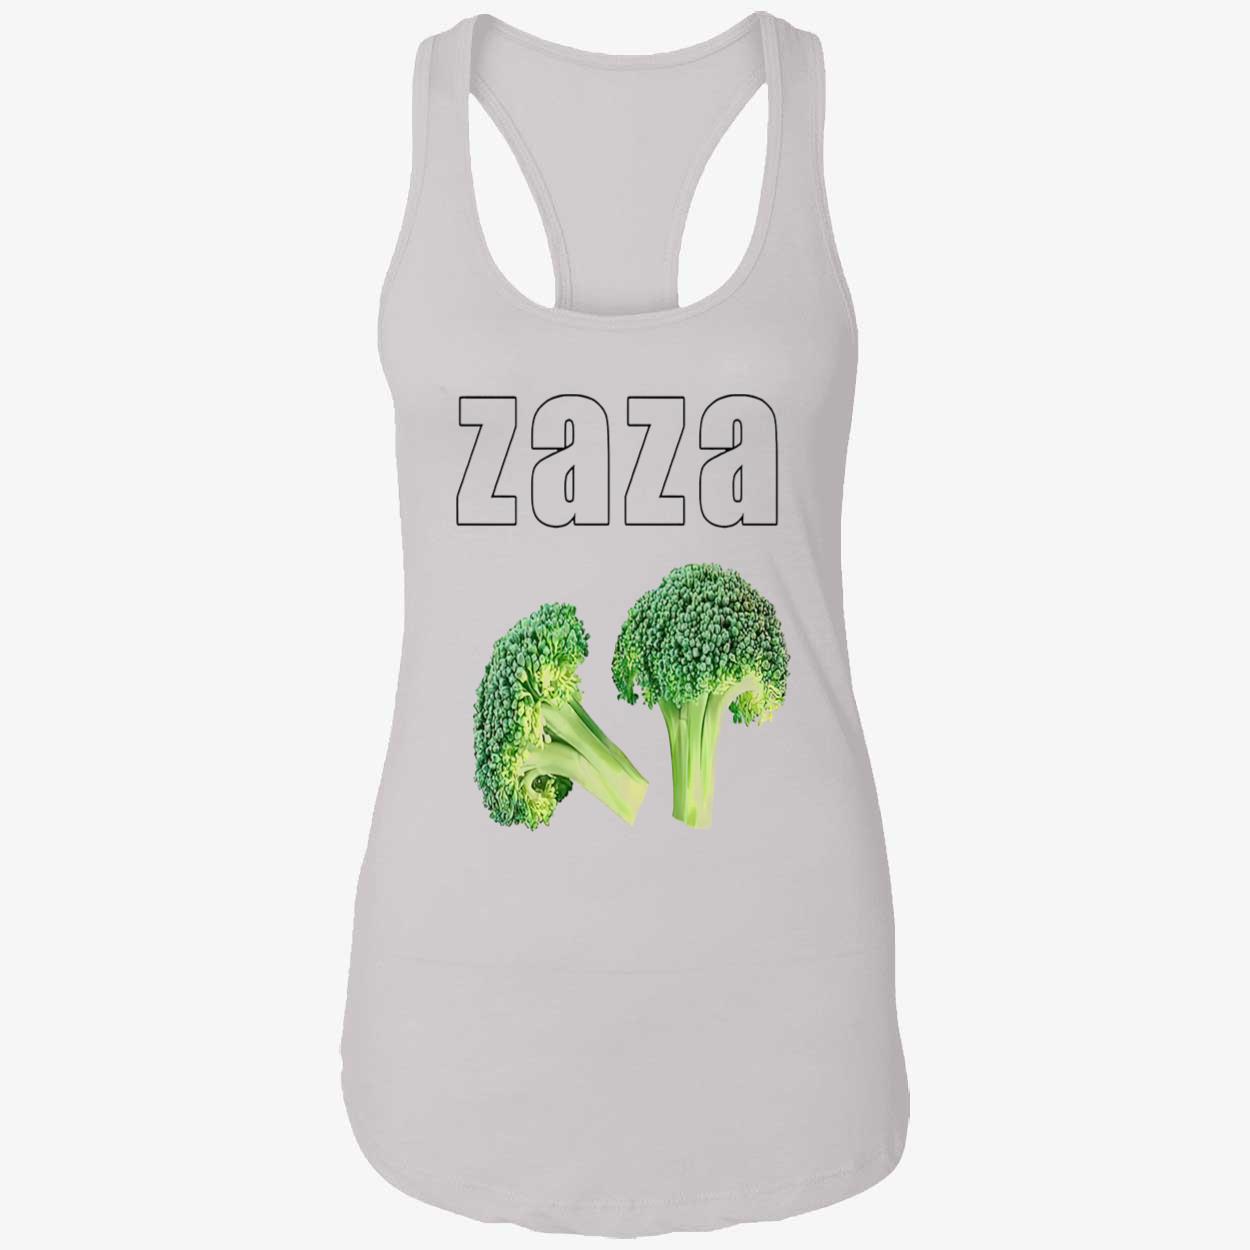 Cauliflower Zaza Shirt